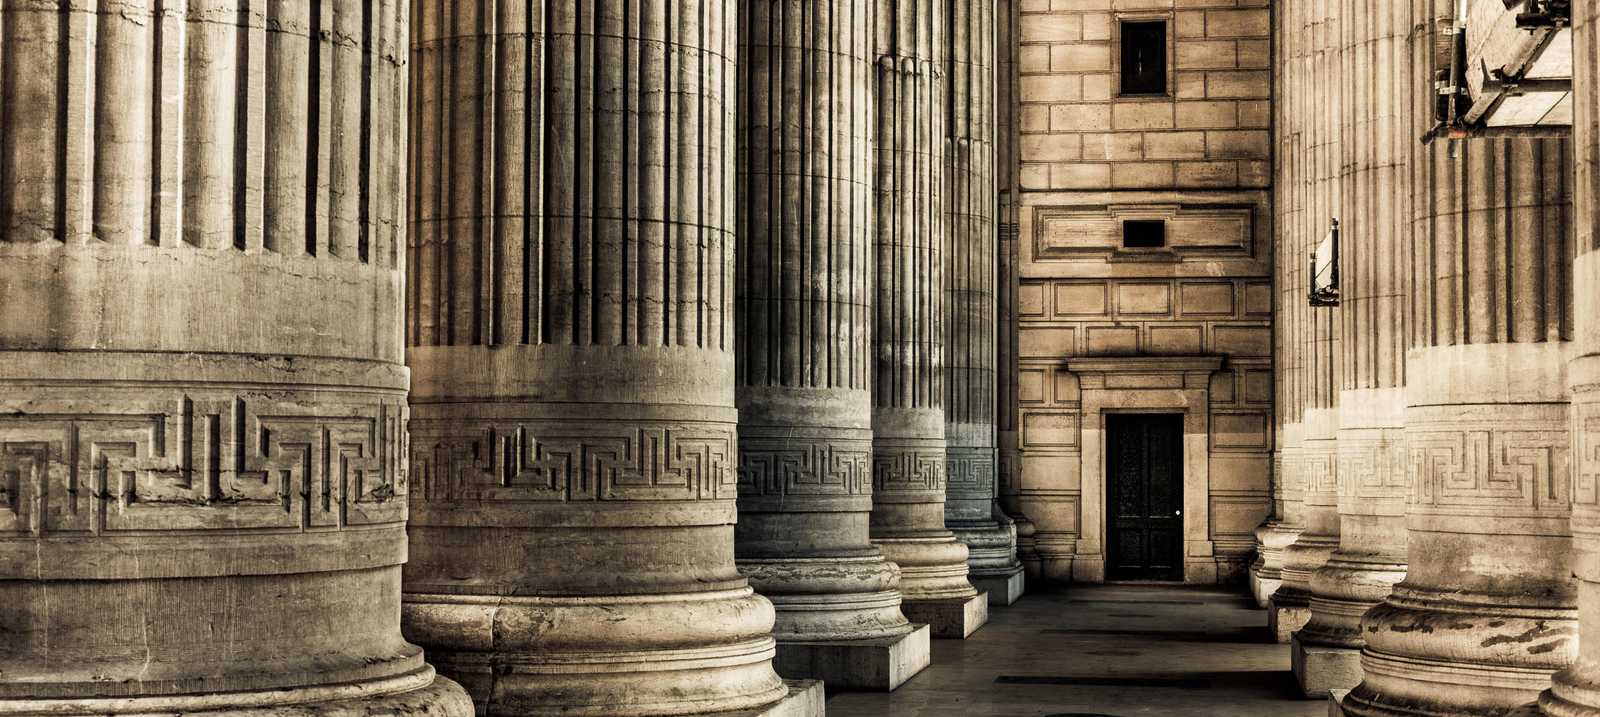 Säulen in einem Gerichtsgebäude